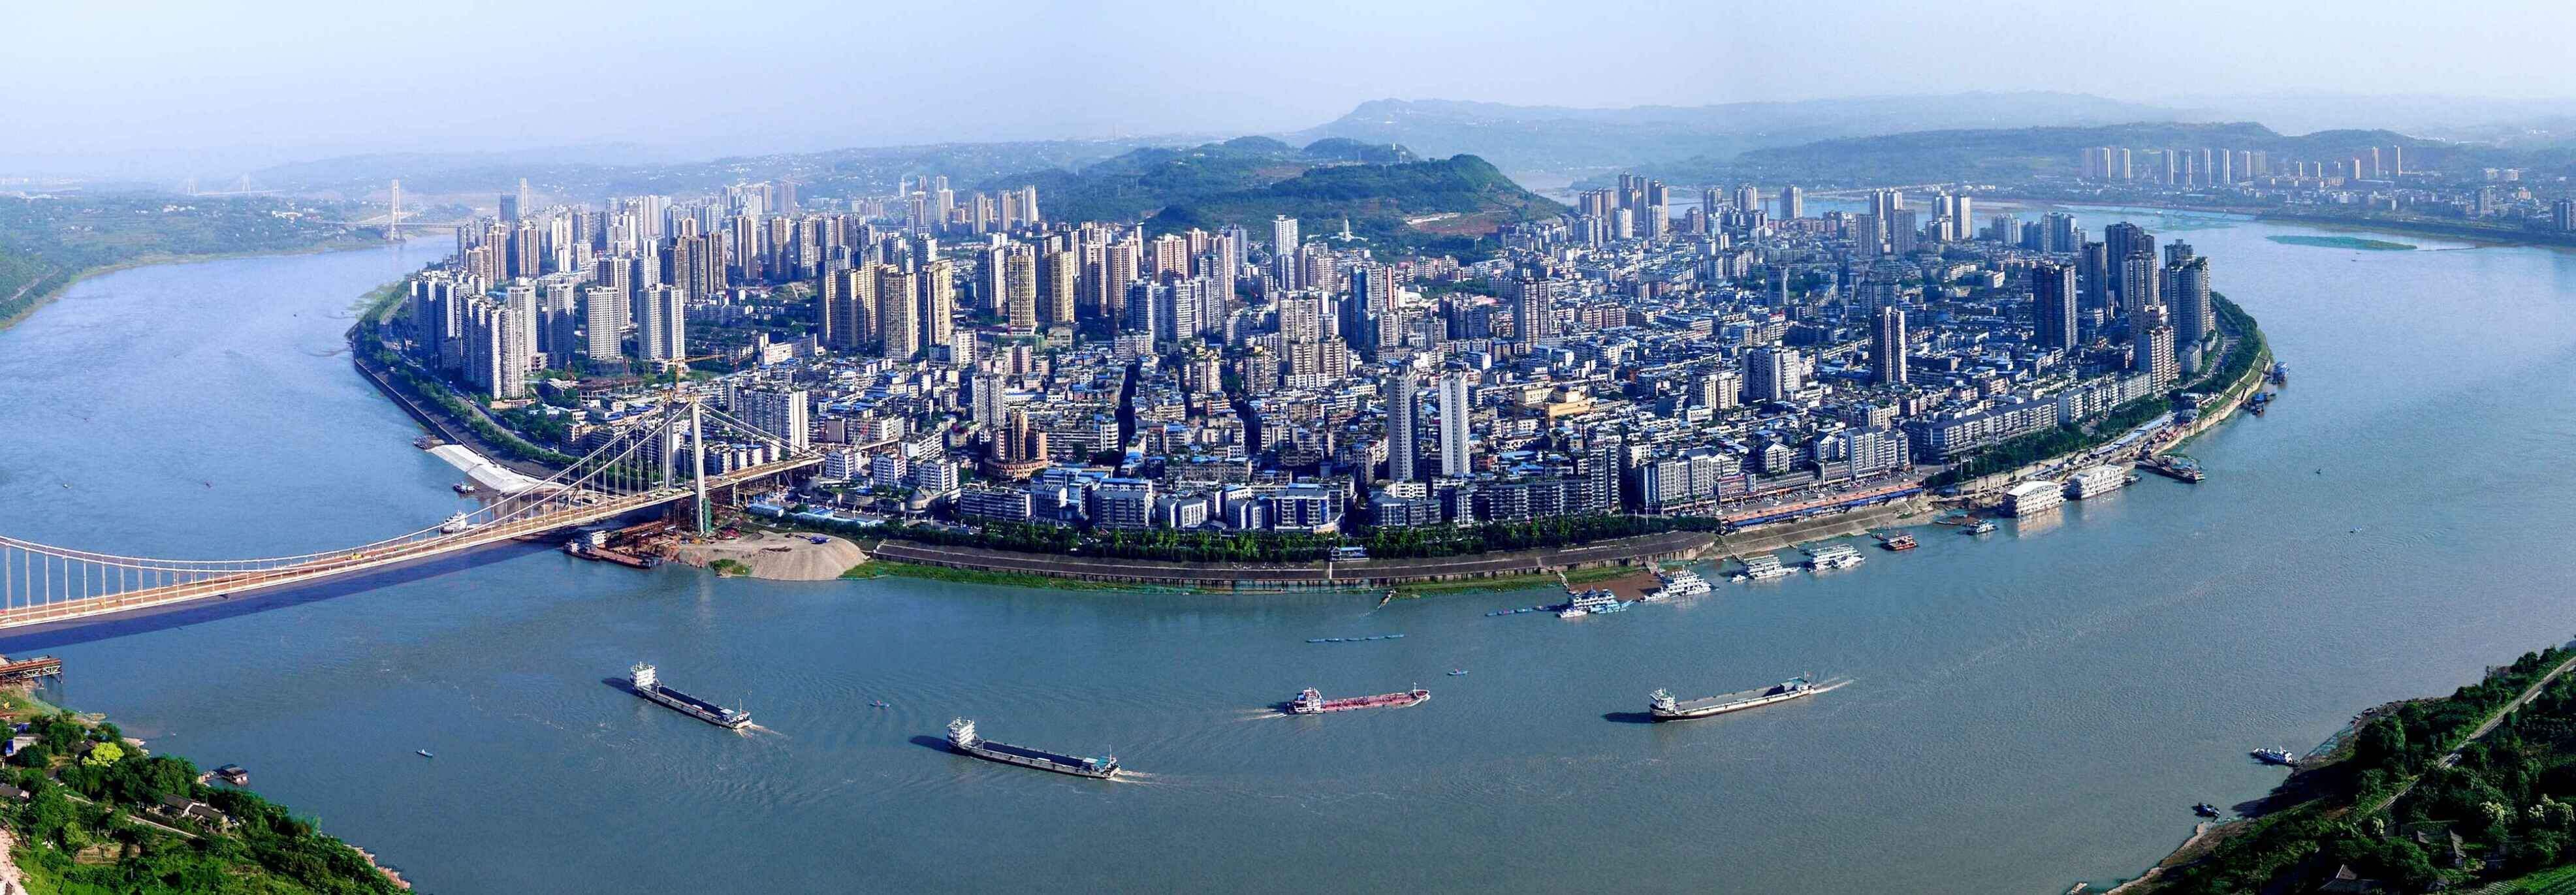 江津,一个坐落于重庆西南部的滨江山水城市,水土丰饶,历史悠远